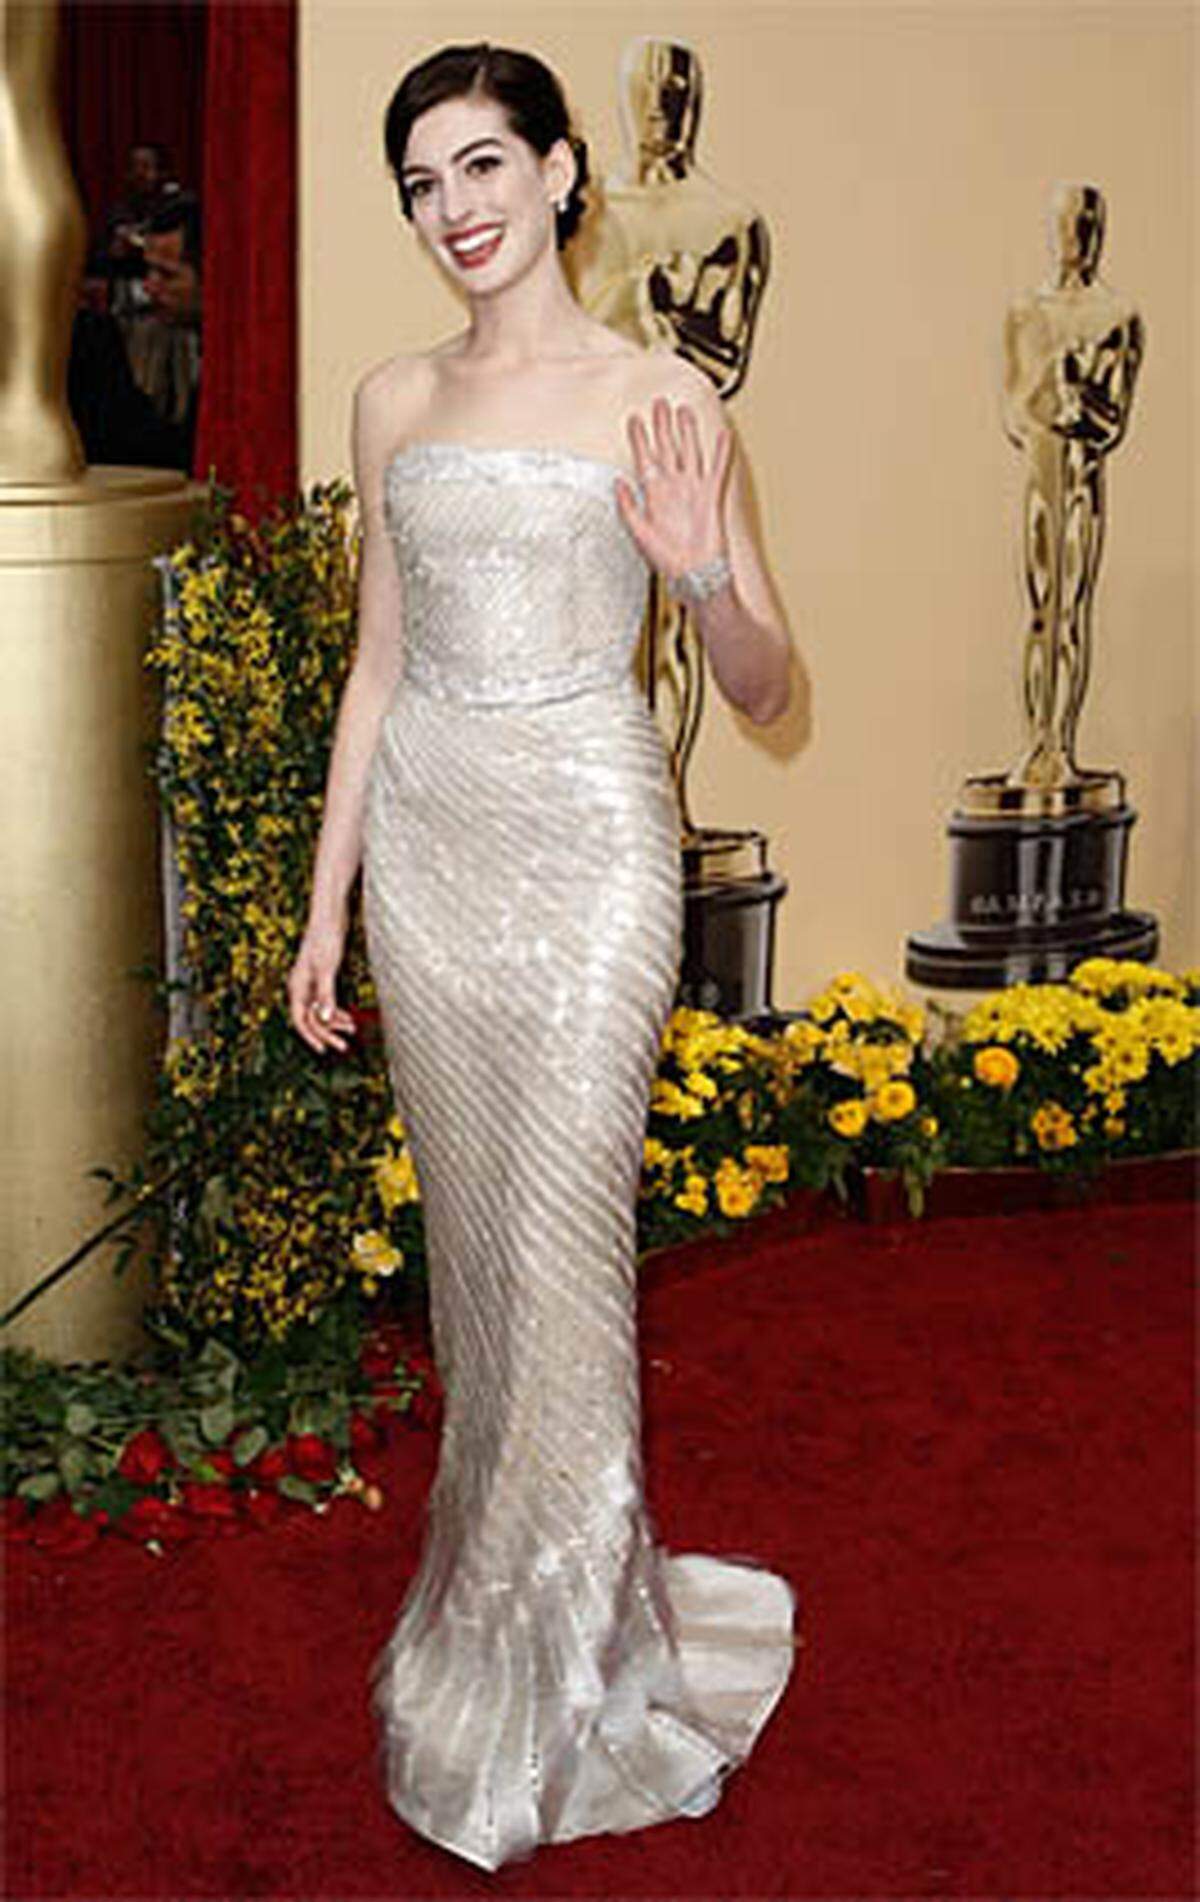 Anne Hathaway beeindruckte mit ihrer Leistung in "Rachel Getting Married" und wurde in der Kategorie Beste Hauptdarstellerin nominiert.